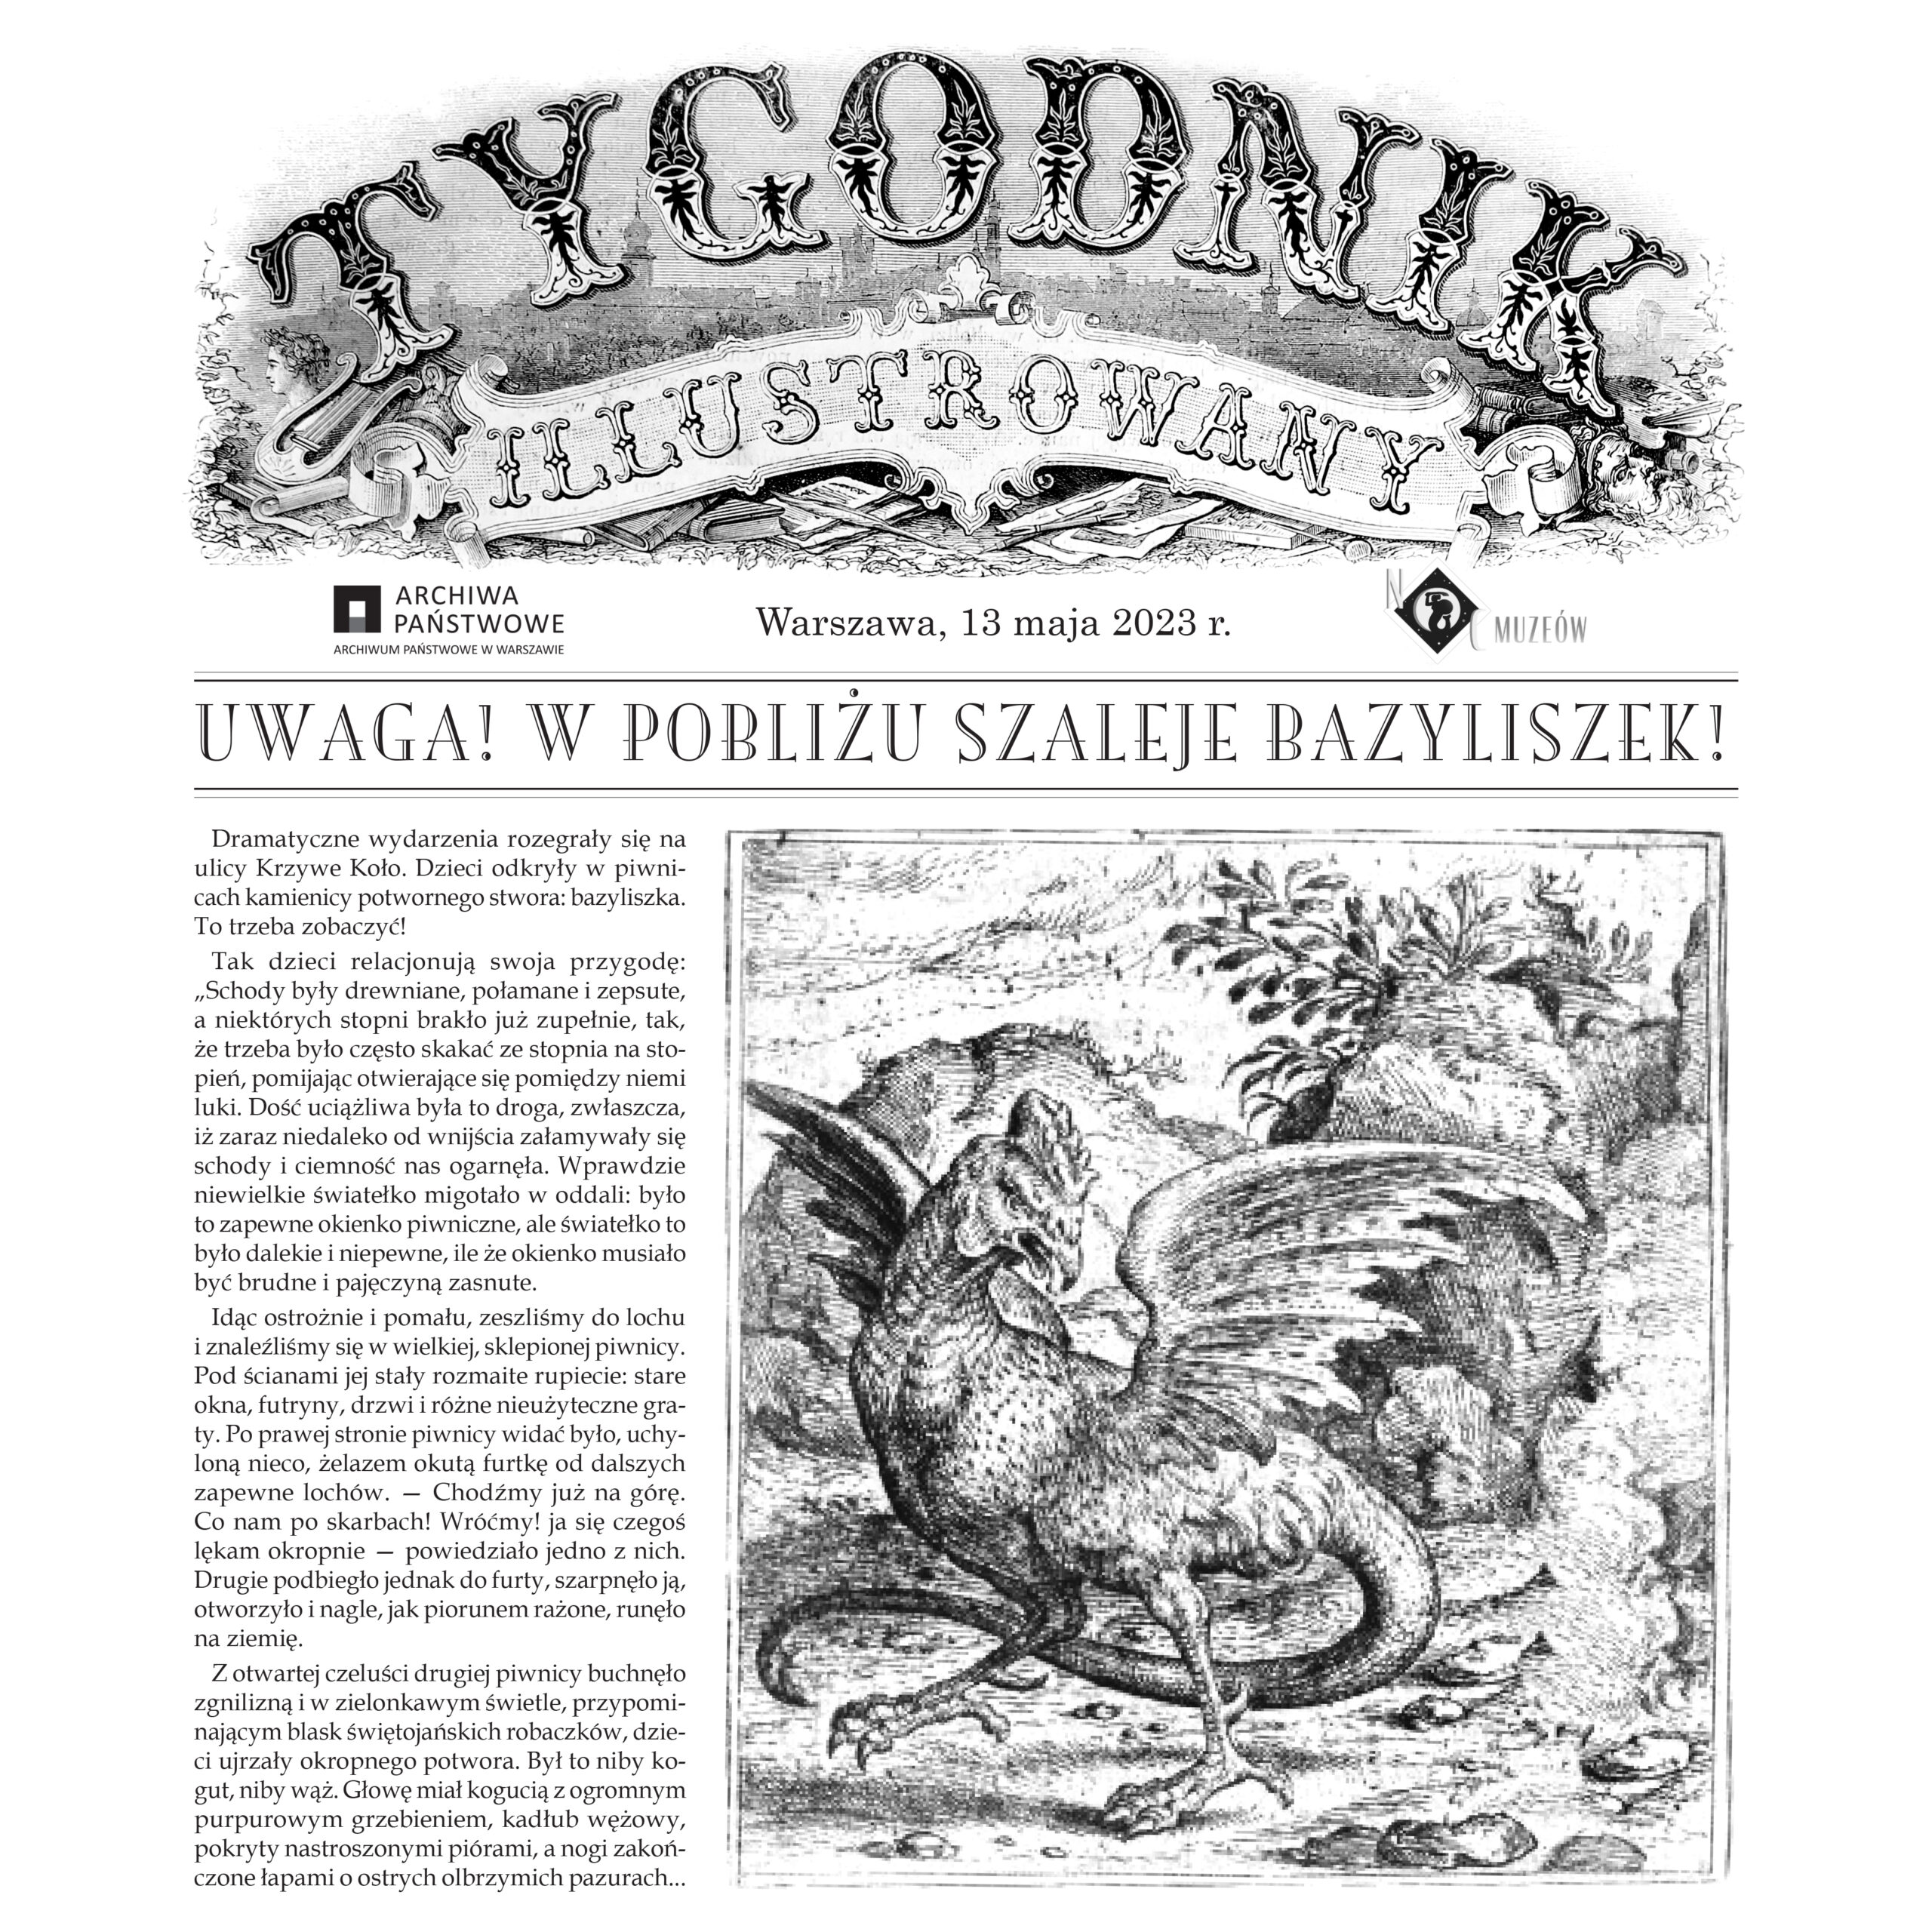 Stara Gazeta - Uwaga w pobliży szaleje bazyliszek